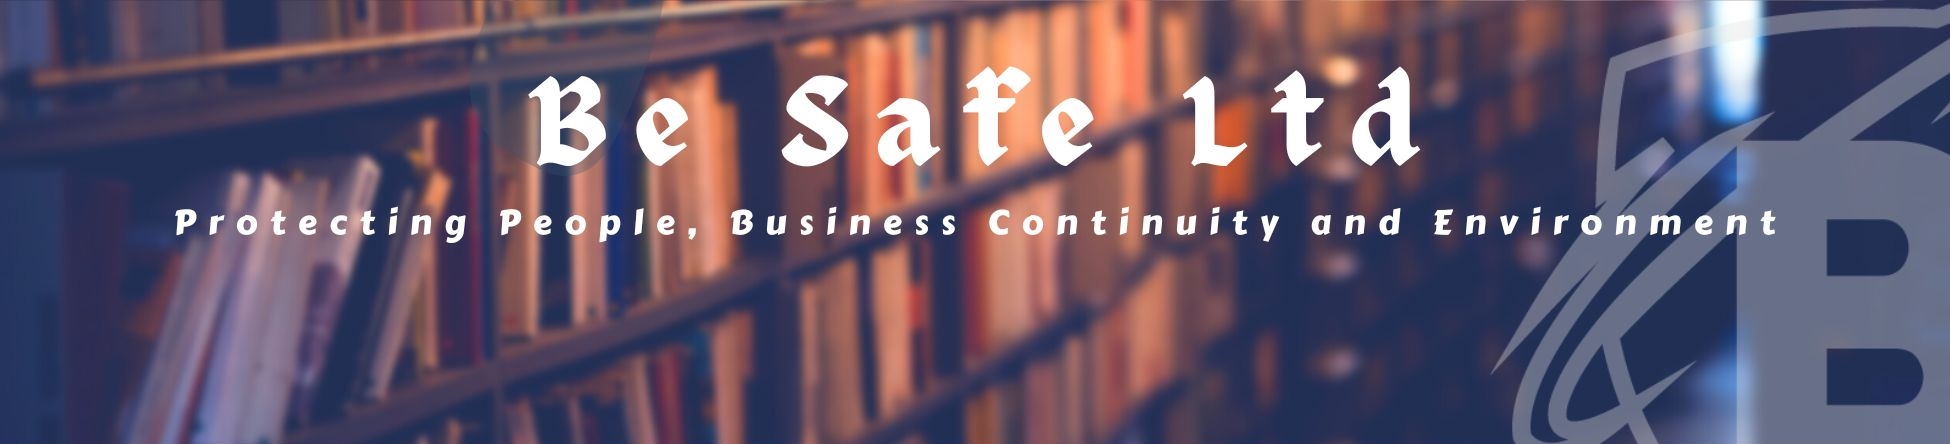 Be Safe Admin Be Safe Ltd.